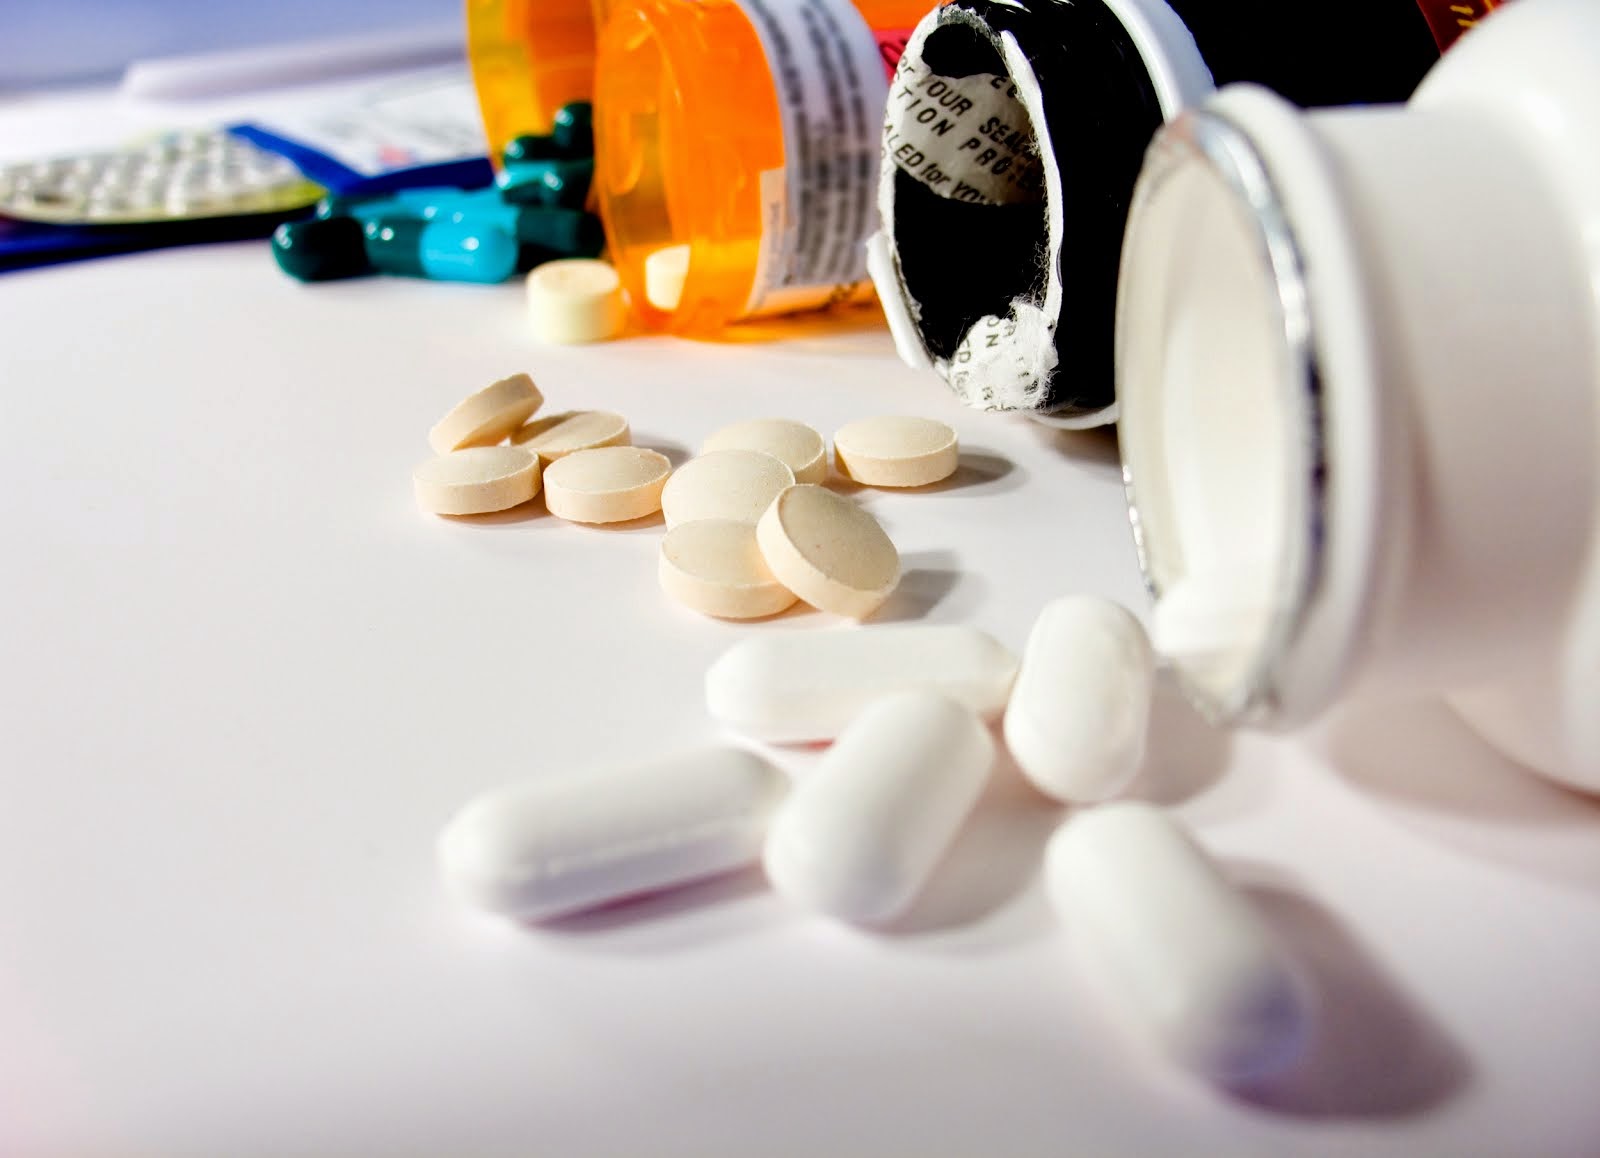 farmakopolako - szczere opinie o lekach, suplementach diety, kosmetykach